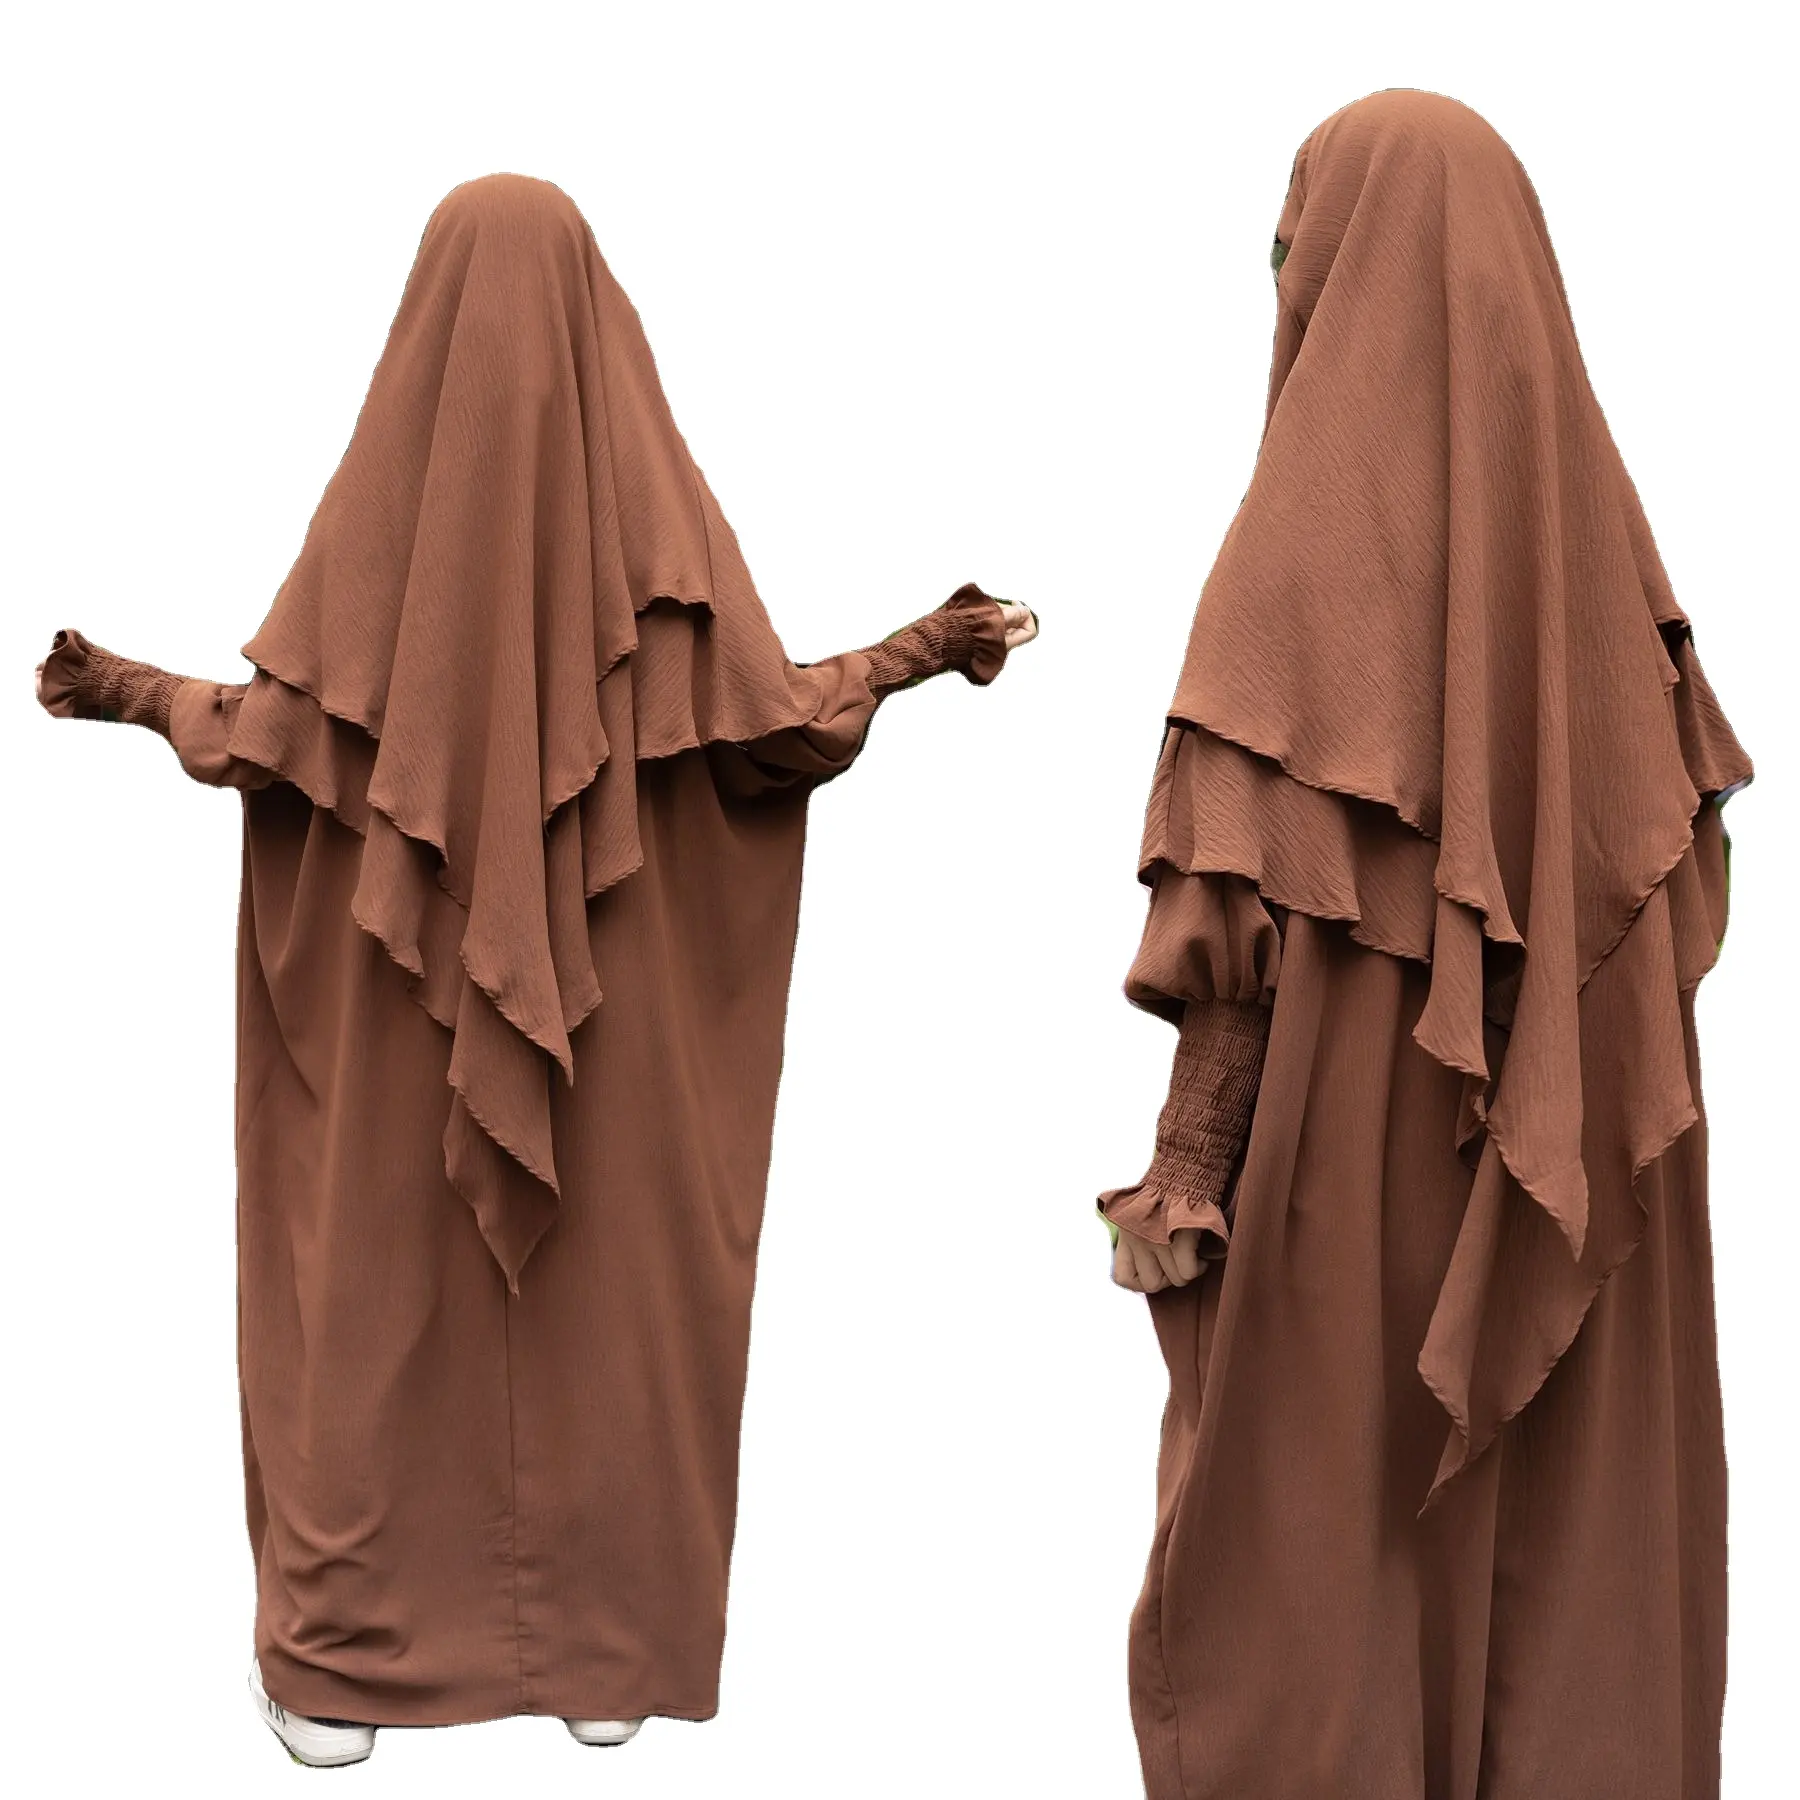 الأكثر مبيعًا من طبقتين طقم خمار لباس الجاز الكريب بدلة فاخرة إسلامية متواضعة أزياء الصلاة حجاب طويل مع عباية L0099